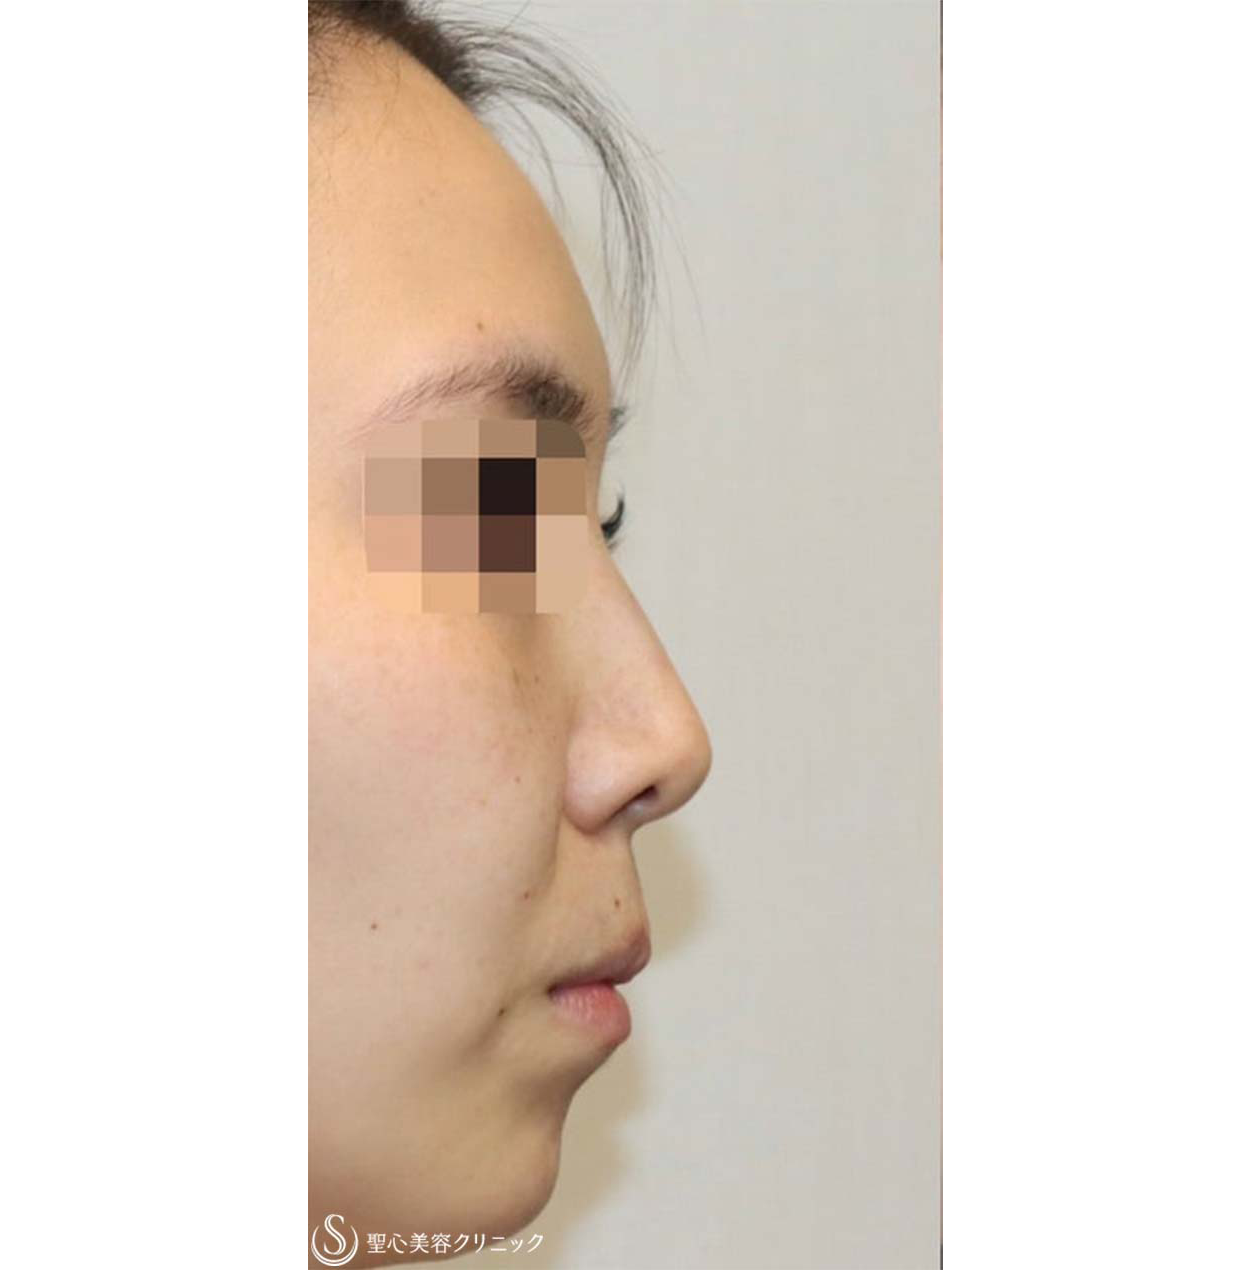 鼻中隔延長・鼻尖形成術・鼻背軟骨移植